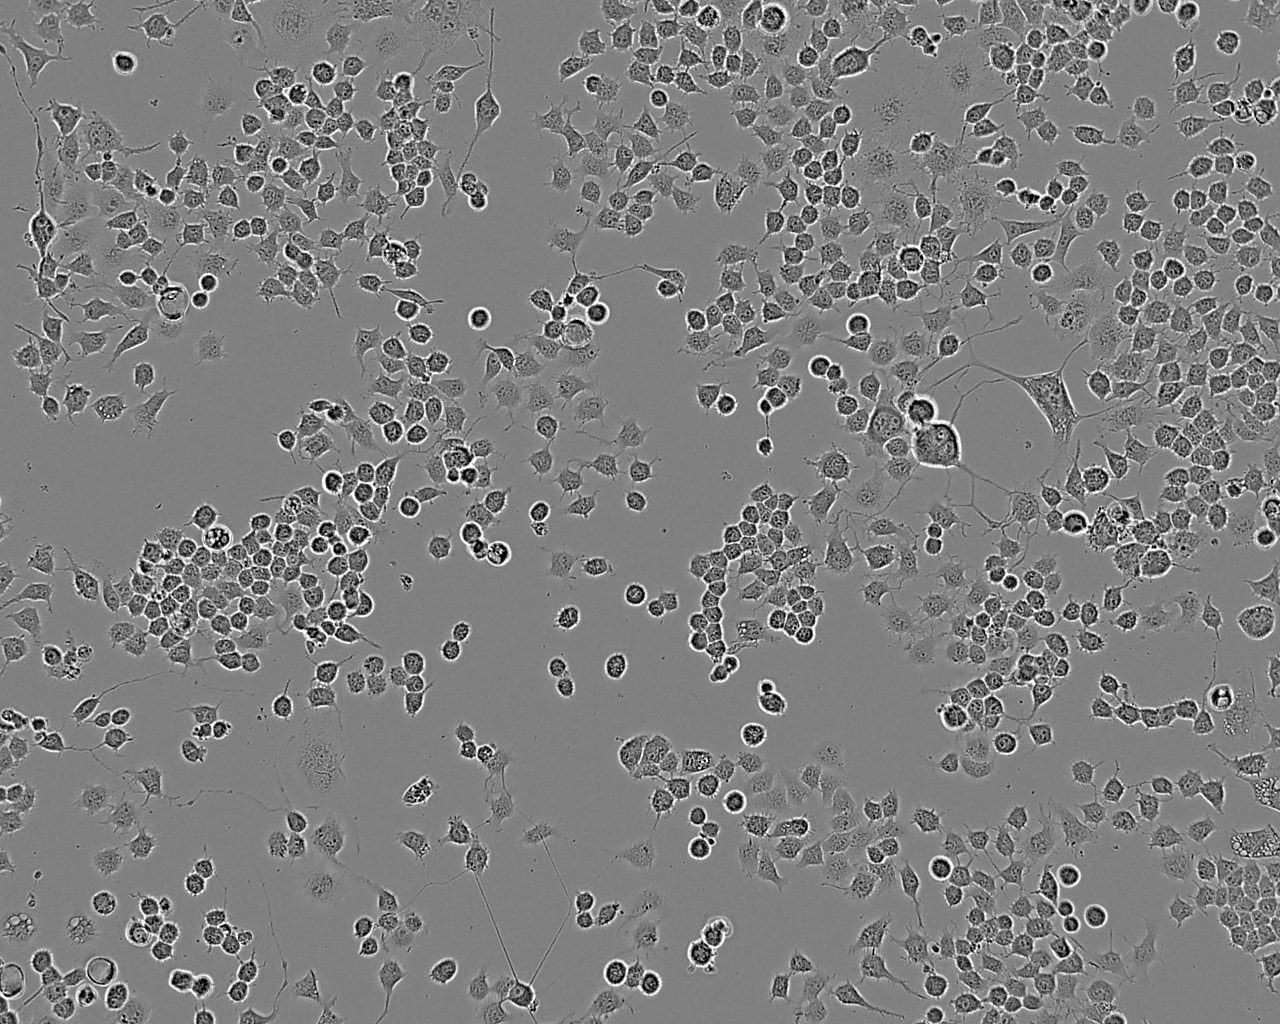 HEK293-A Cell:腺病毒包装人胚肾细胞系,HEK293-A Cell